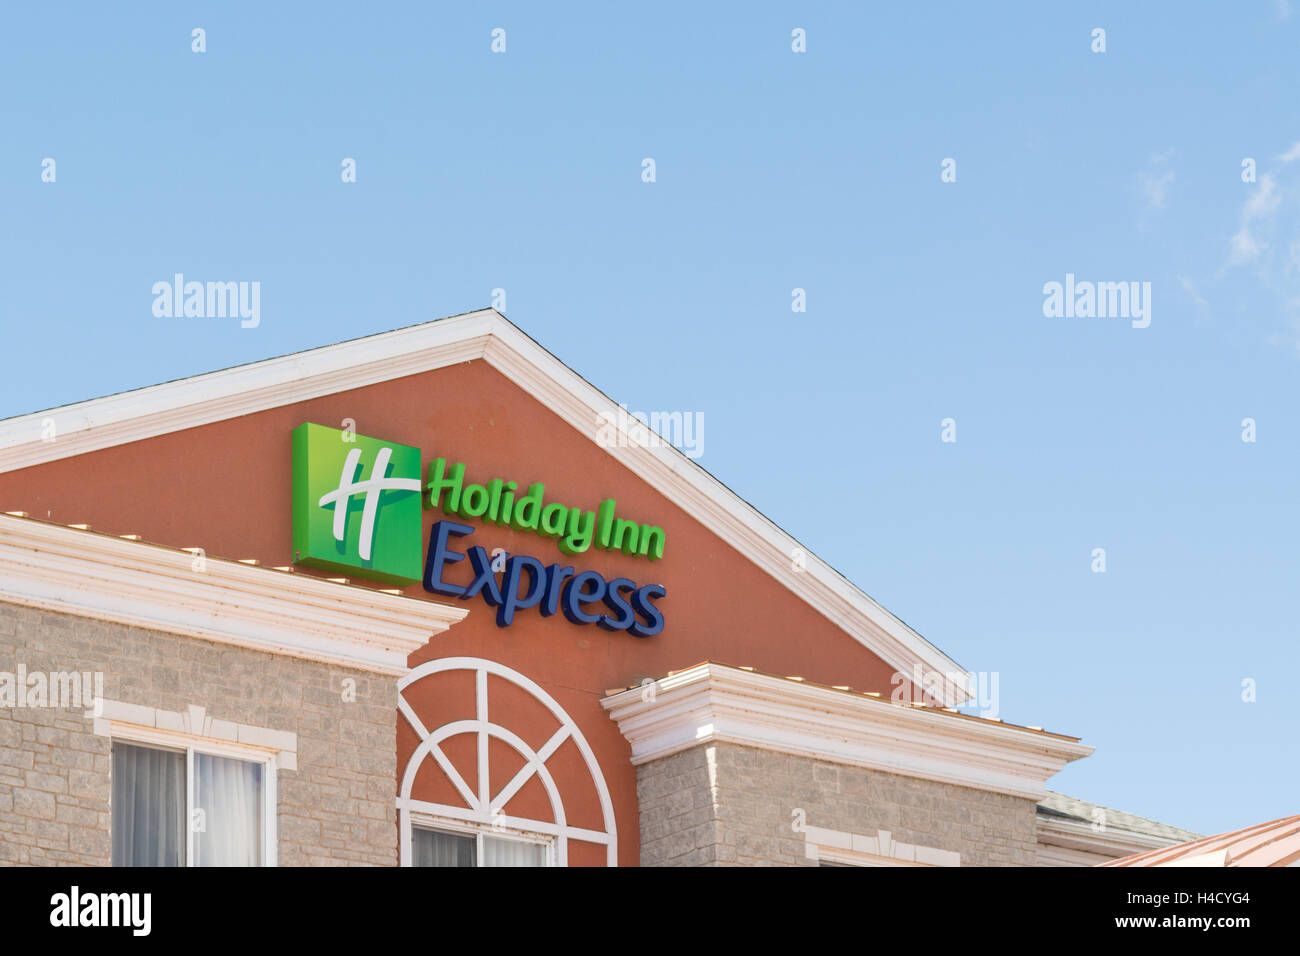 Holiday Inn Express sign, 1000 Islands, Gananoque, Ontario, Canada Stock Photo